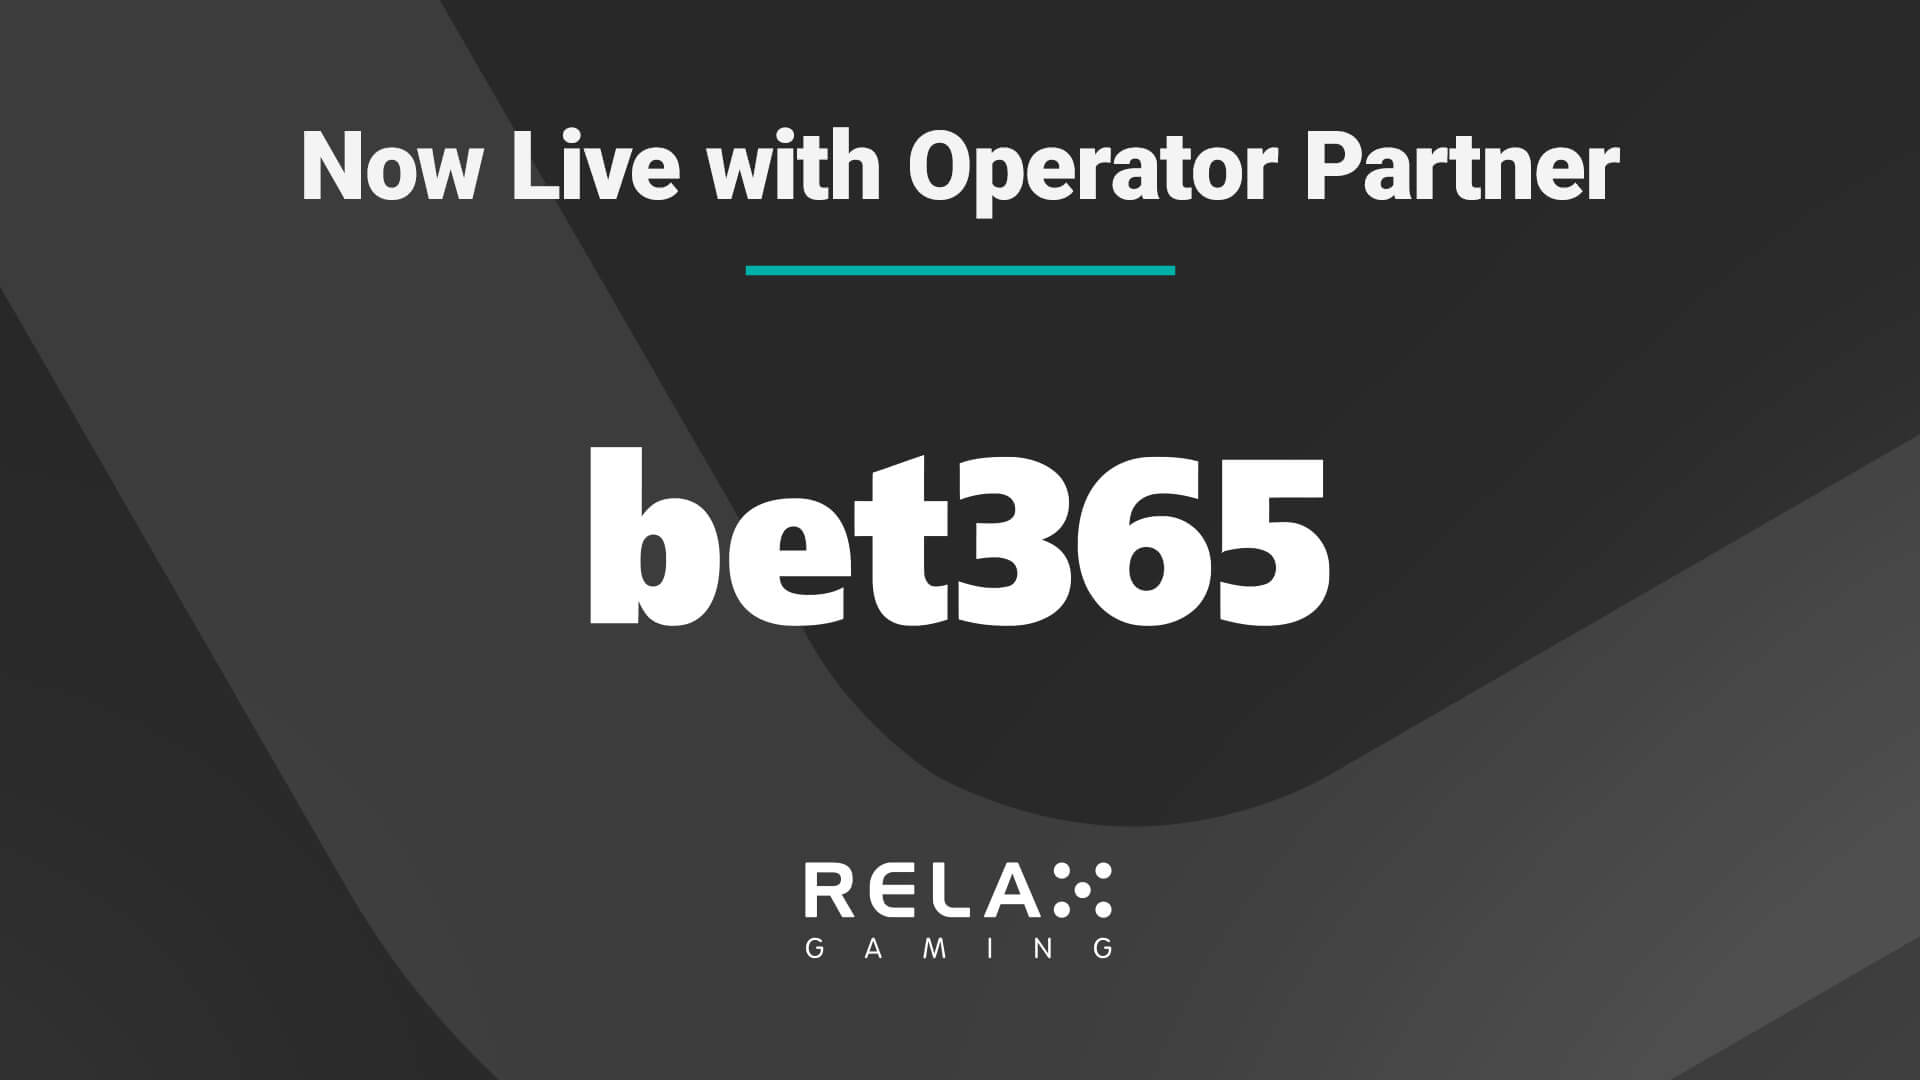 A Relax Gaming portfóliója elérhető a Bet365 ügyfelei számára